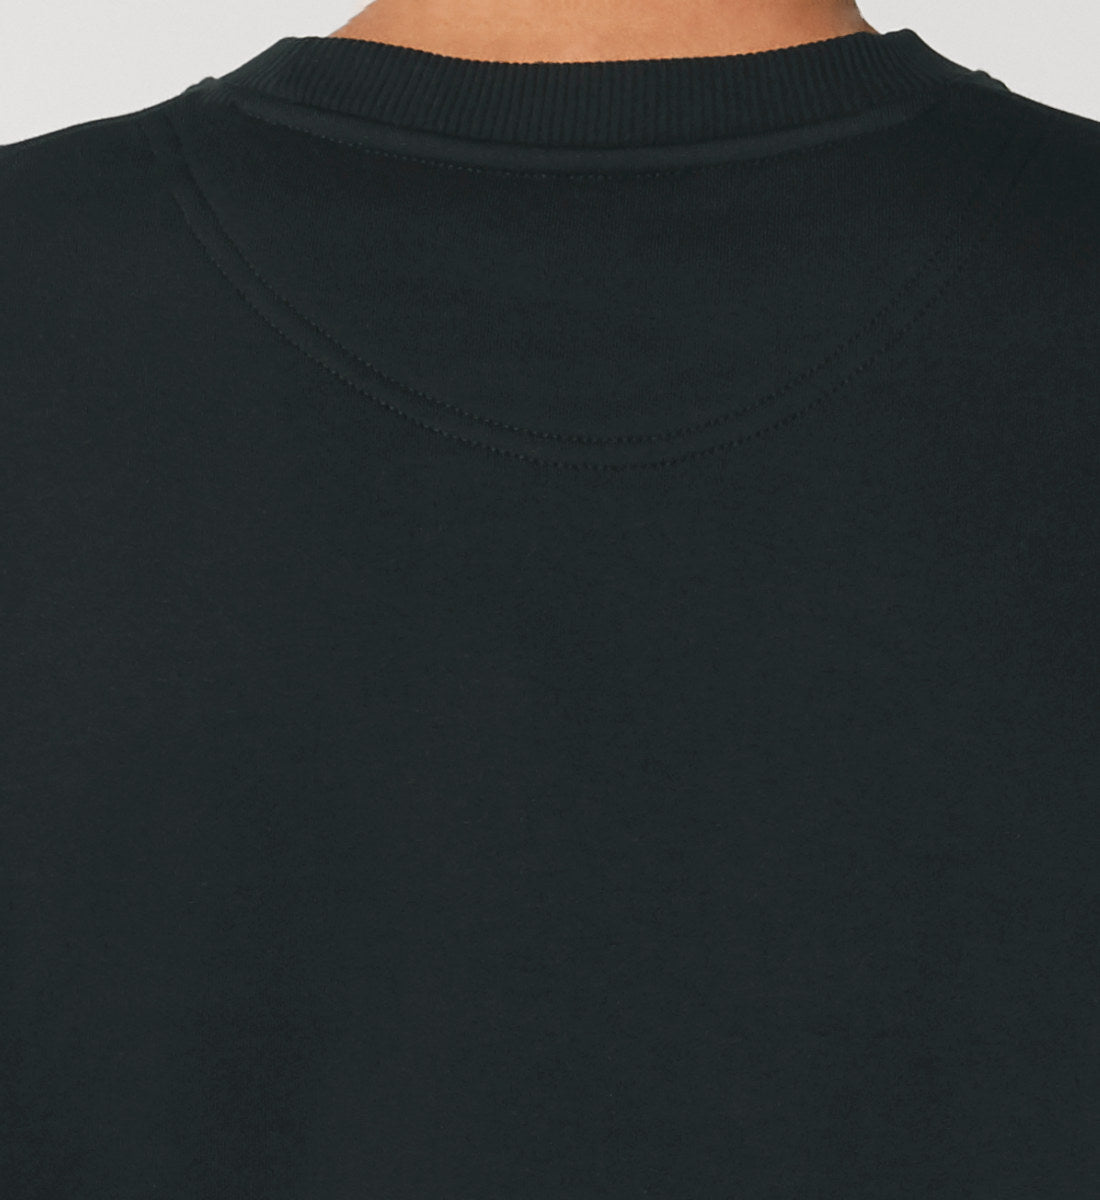 Schwarzes Sweatshirt Unisex für Frauen und Männer bedruckt mit dem Design der Roger Rockawoo Kollektion Everybody loves Shredders